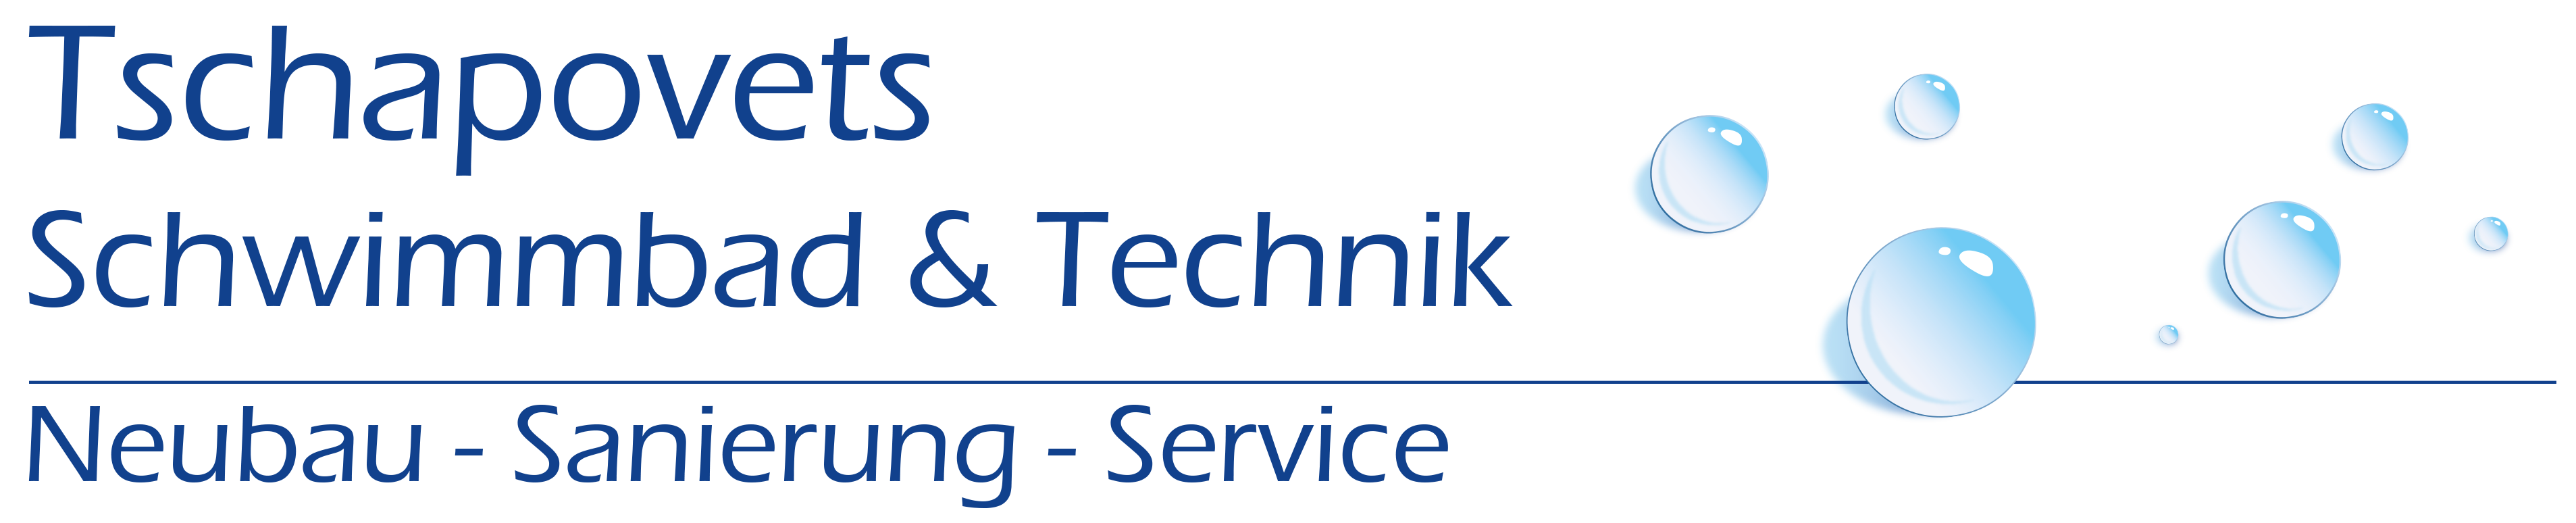 Tschapovets Andreas Schwimmbad & Technik Logo